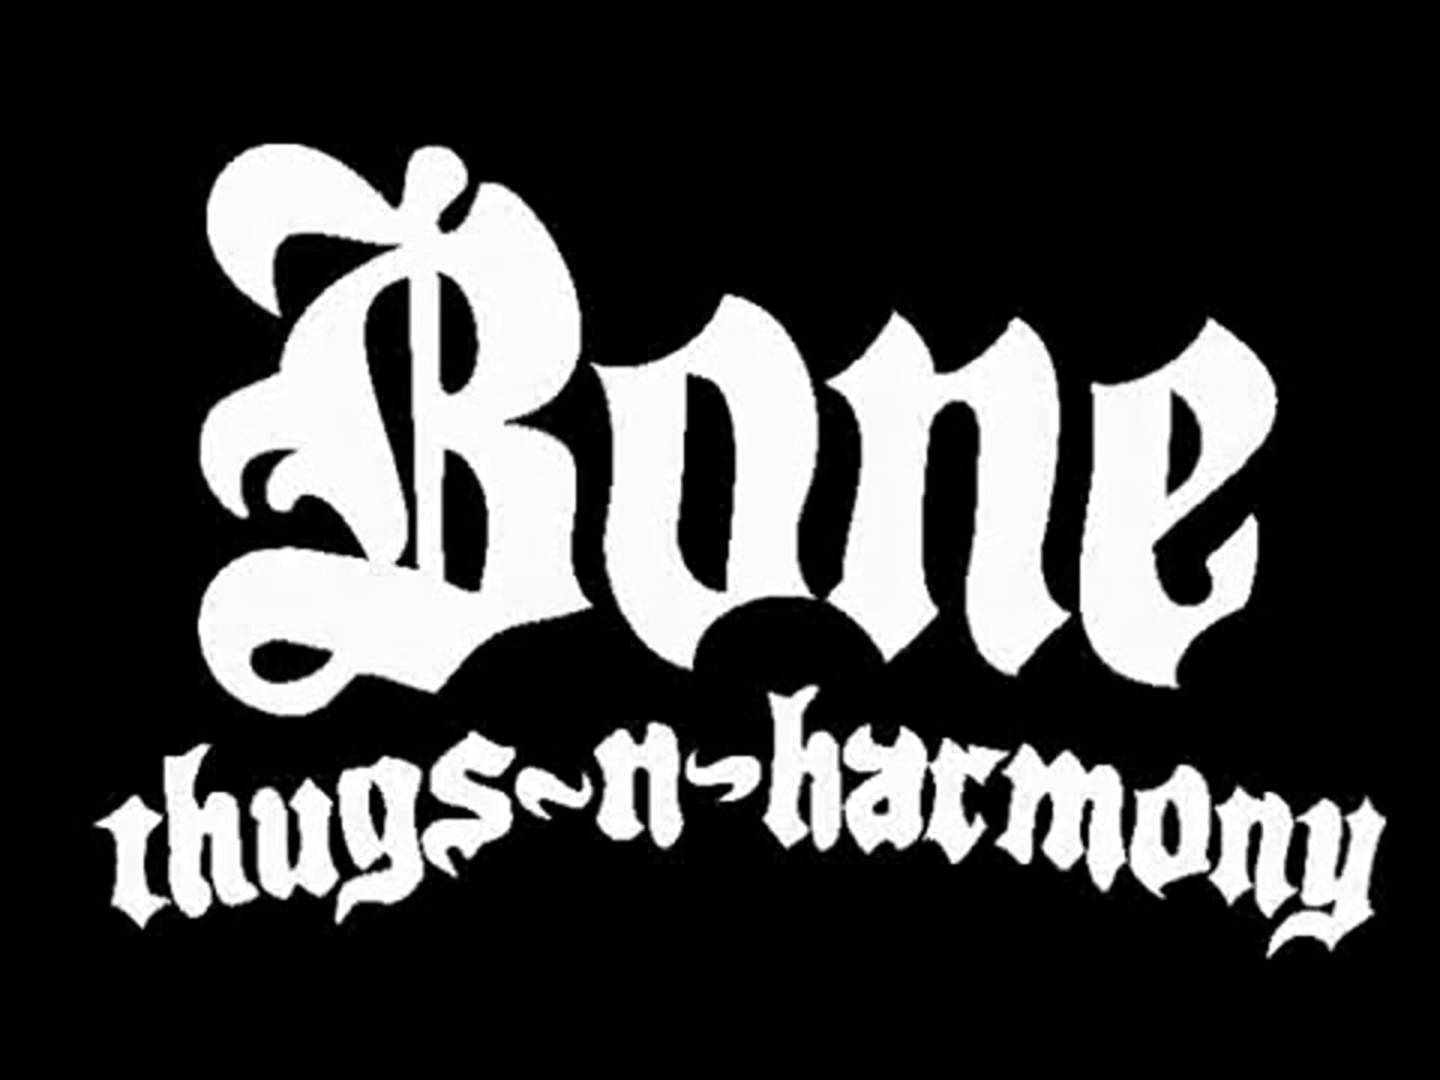 Bone n thugs. Bone Thugs-n-Harmony. Thugs. Фото Bone Thug n Harmony. Bone Thugs & Harmony BTNHRESSURECTION.